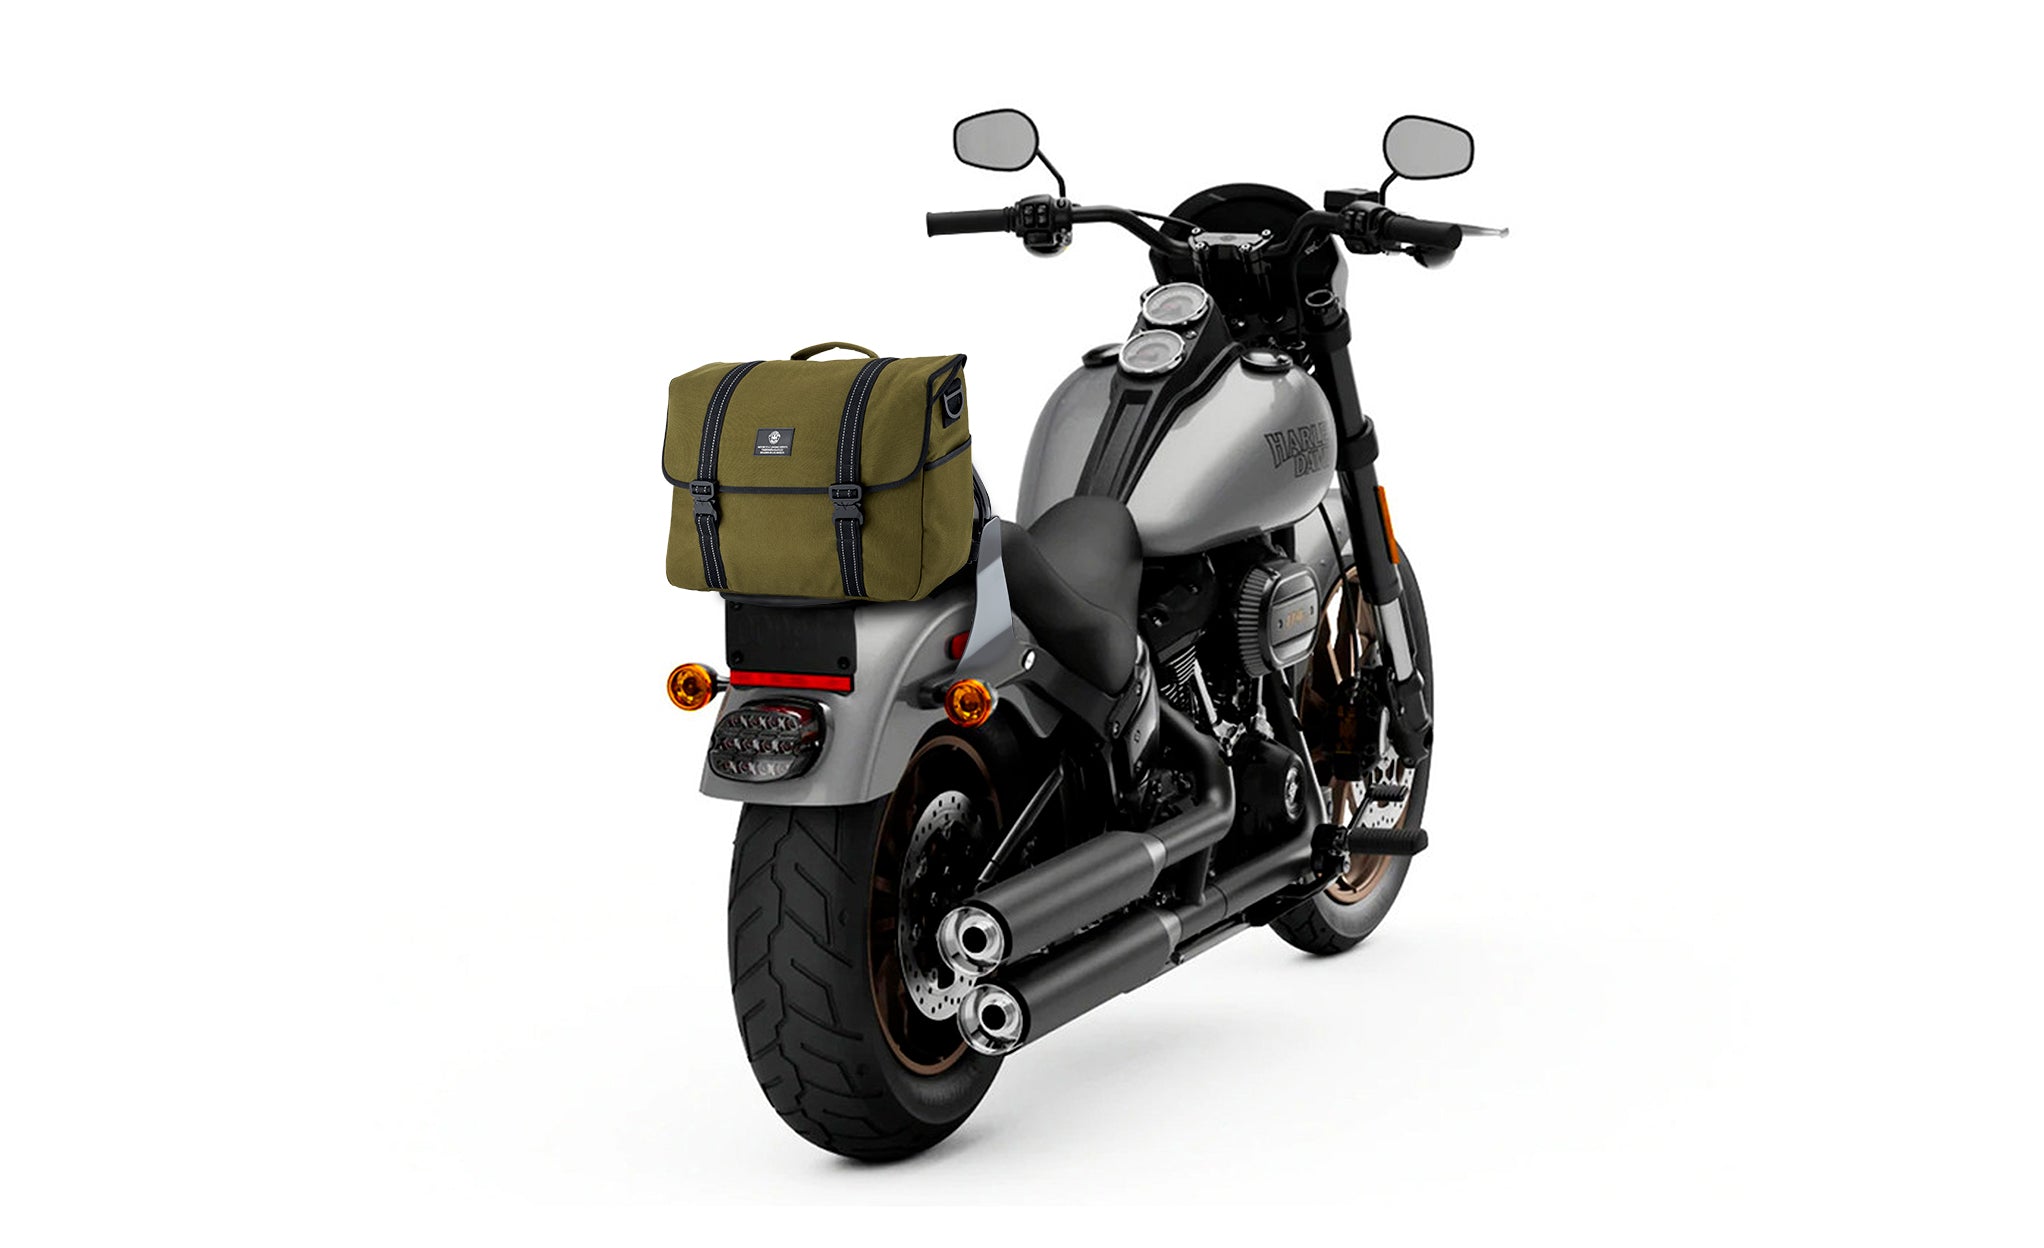 Viking Duo-tone Medium Suzuki Motorcycle Messenger Bag Green/Black Bag on Bike View @expand